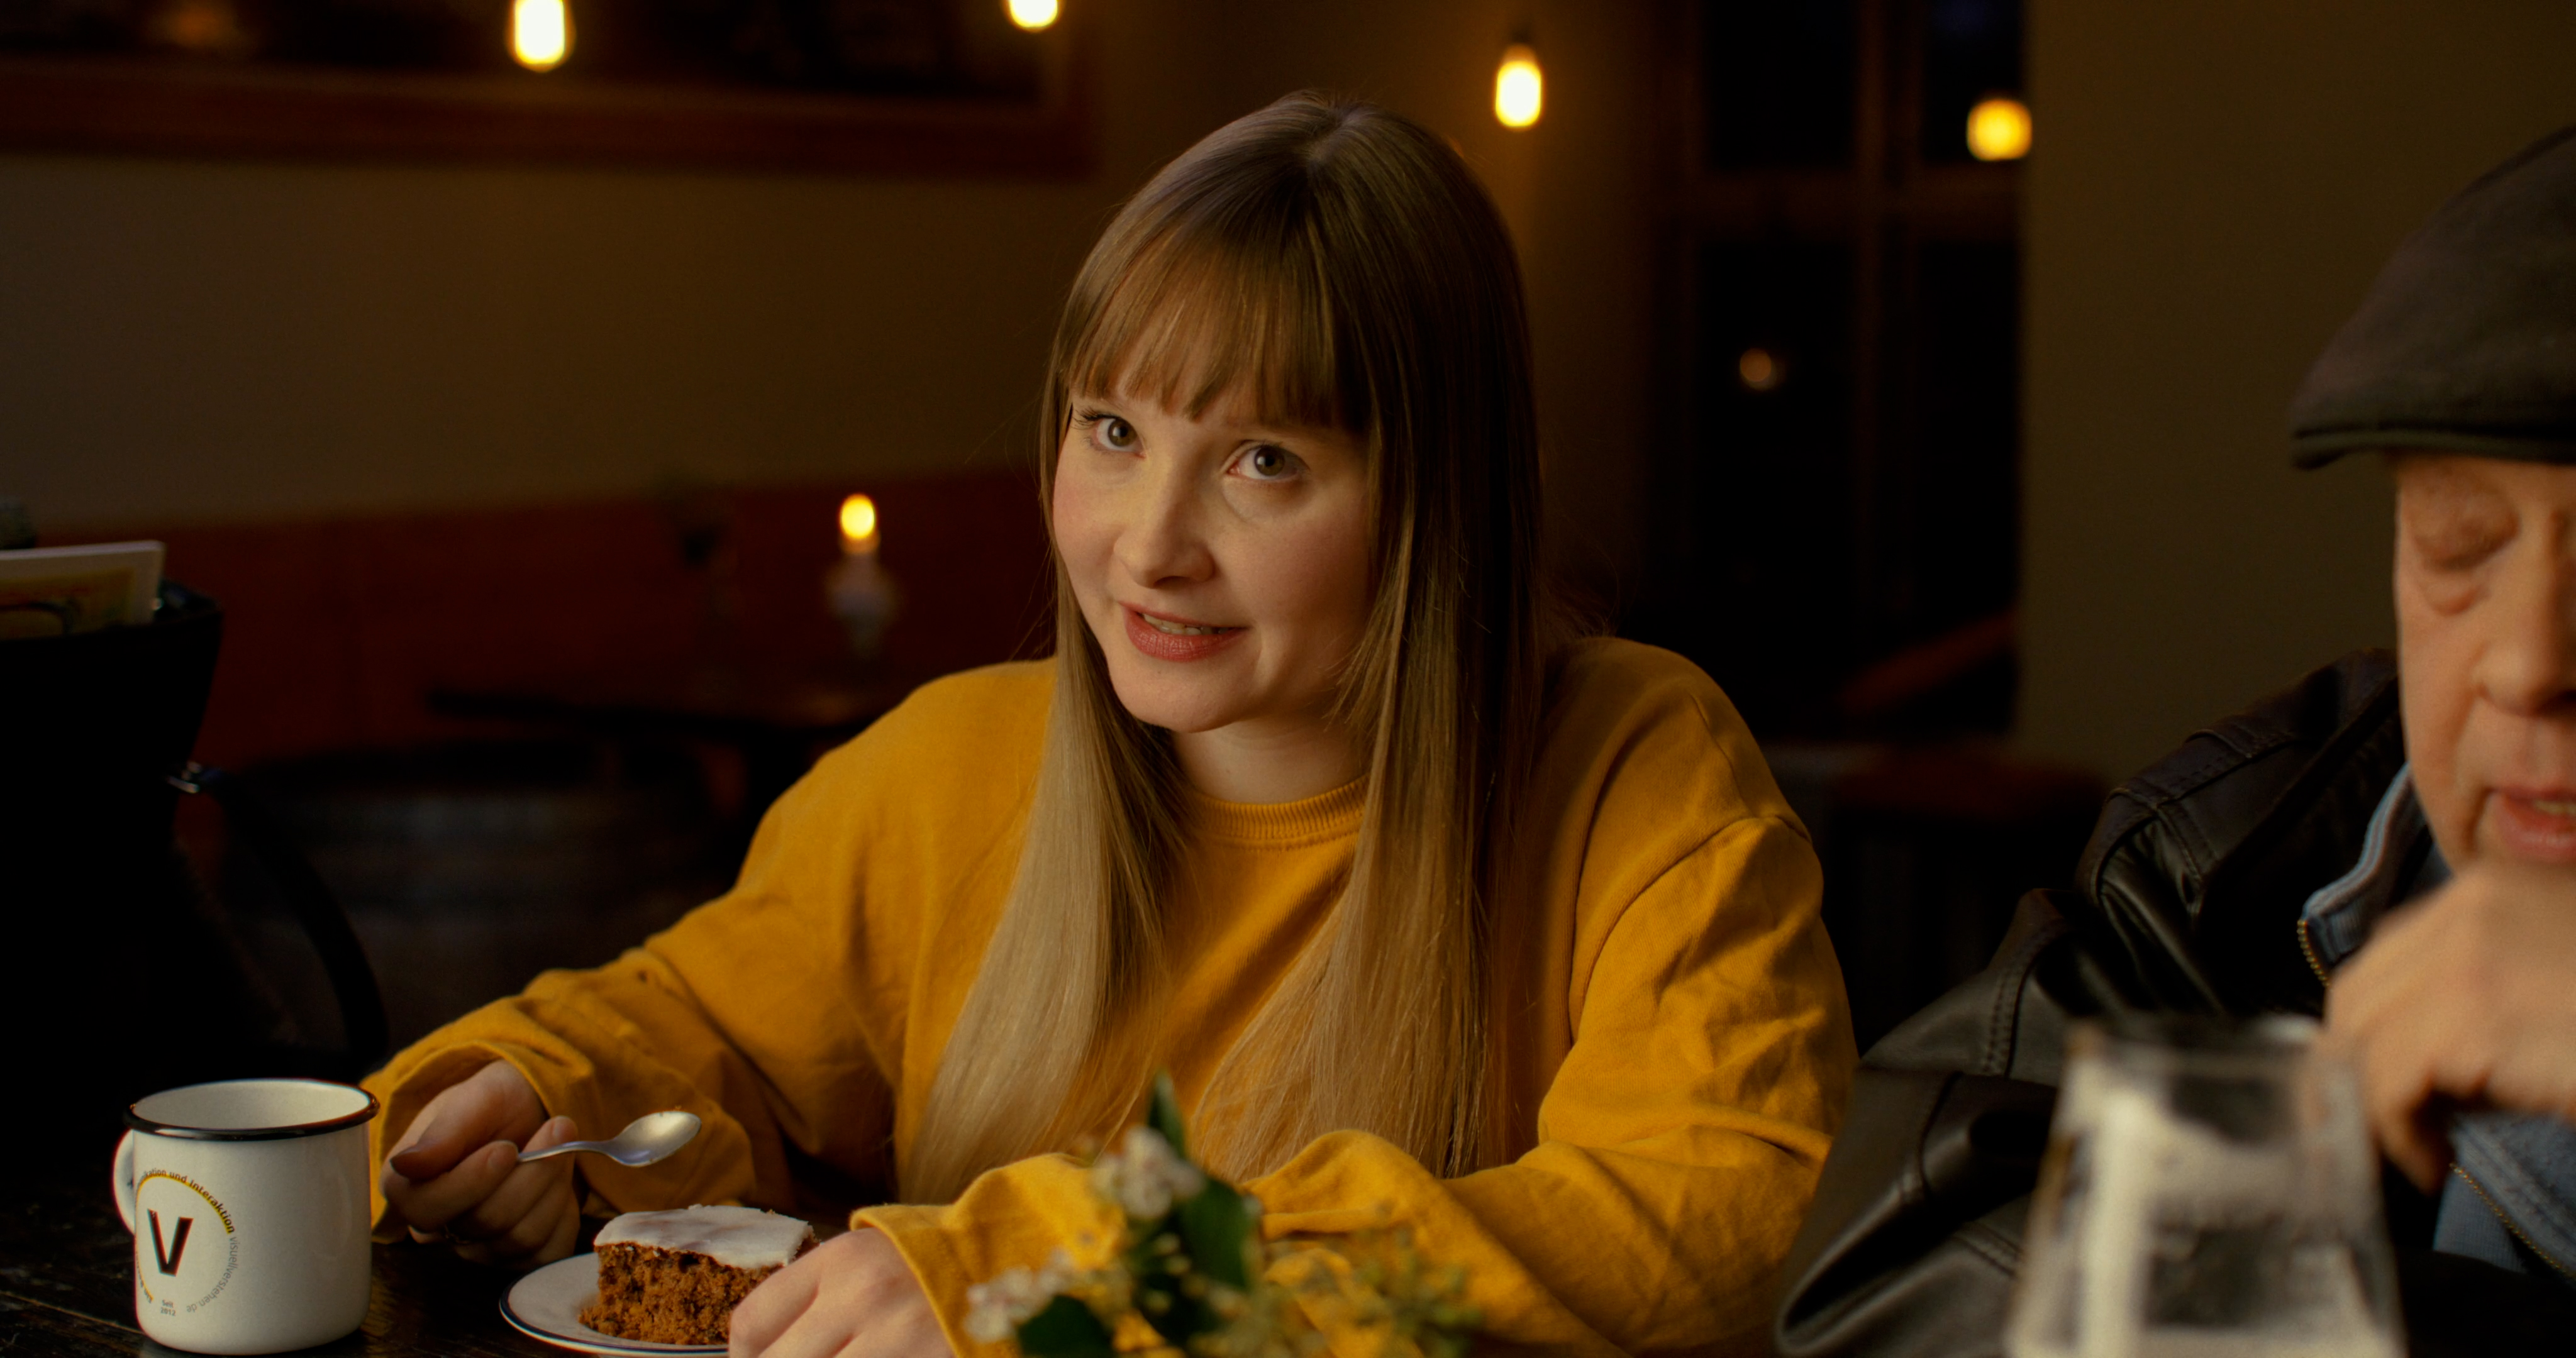 Schauspielerin aus dem visuellverstehen-Jahresrückblick-Video von 2021, die im gelben Pullover an einer Bar sitzt..